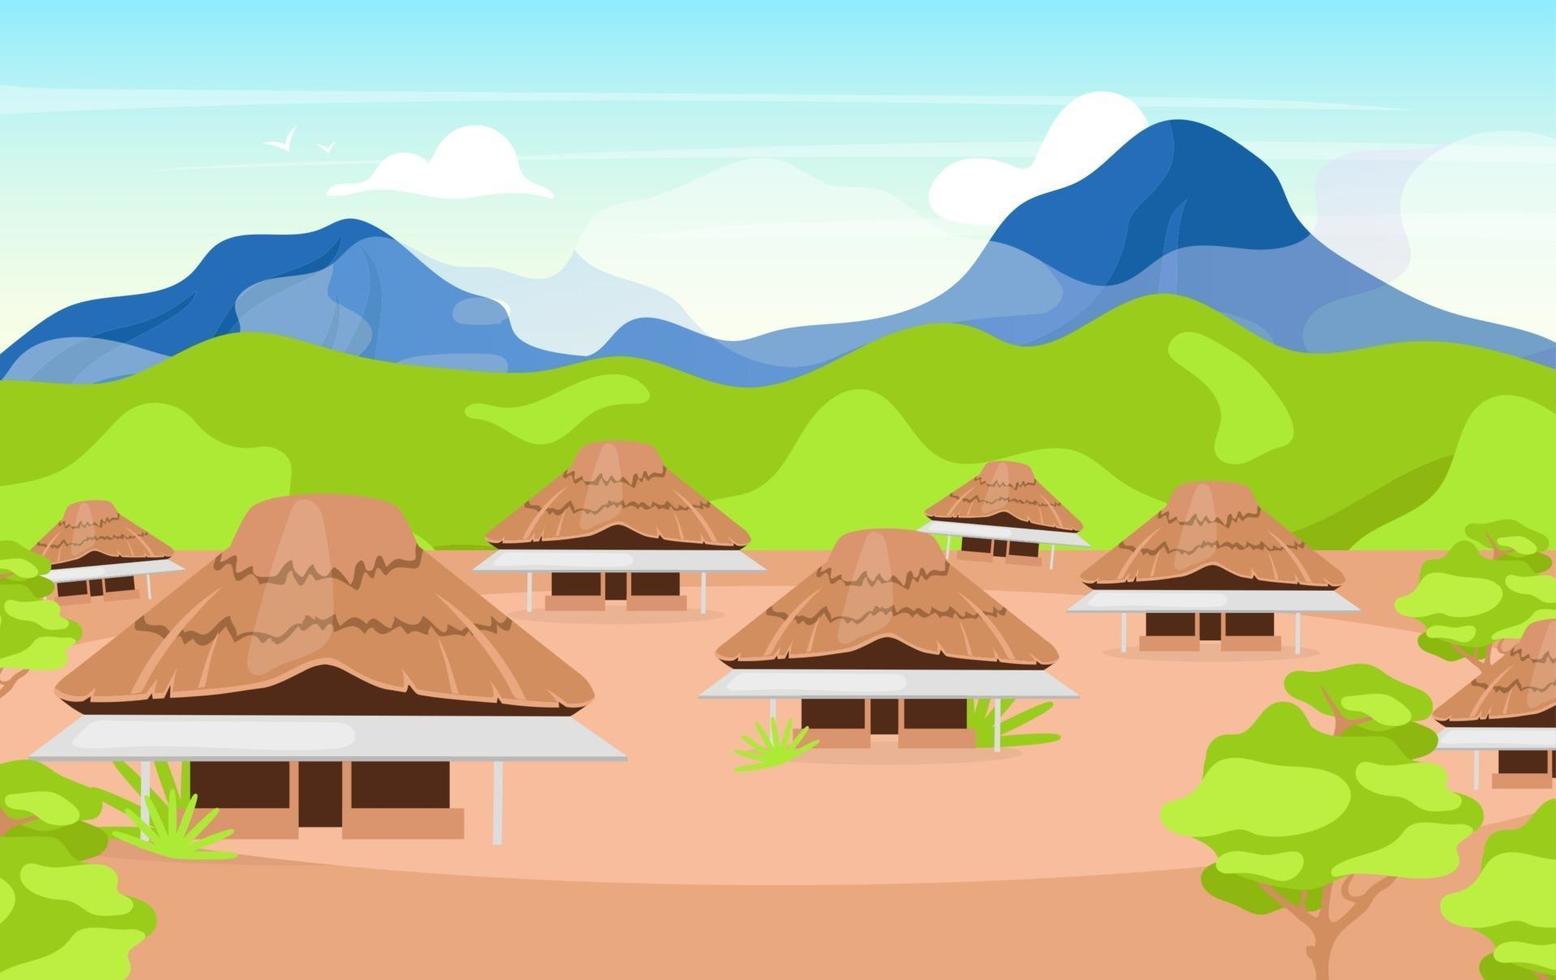 ilustração vetorial plana de casas de madeira indonésias. kajang leko jambi. edifício em estilo balinês. casa de campo primitiva tradicional asiática. assentamento nas montanhas. fundo de desenho de casas joglo vetor